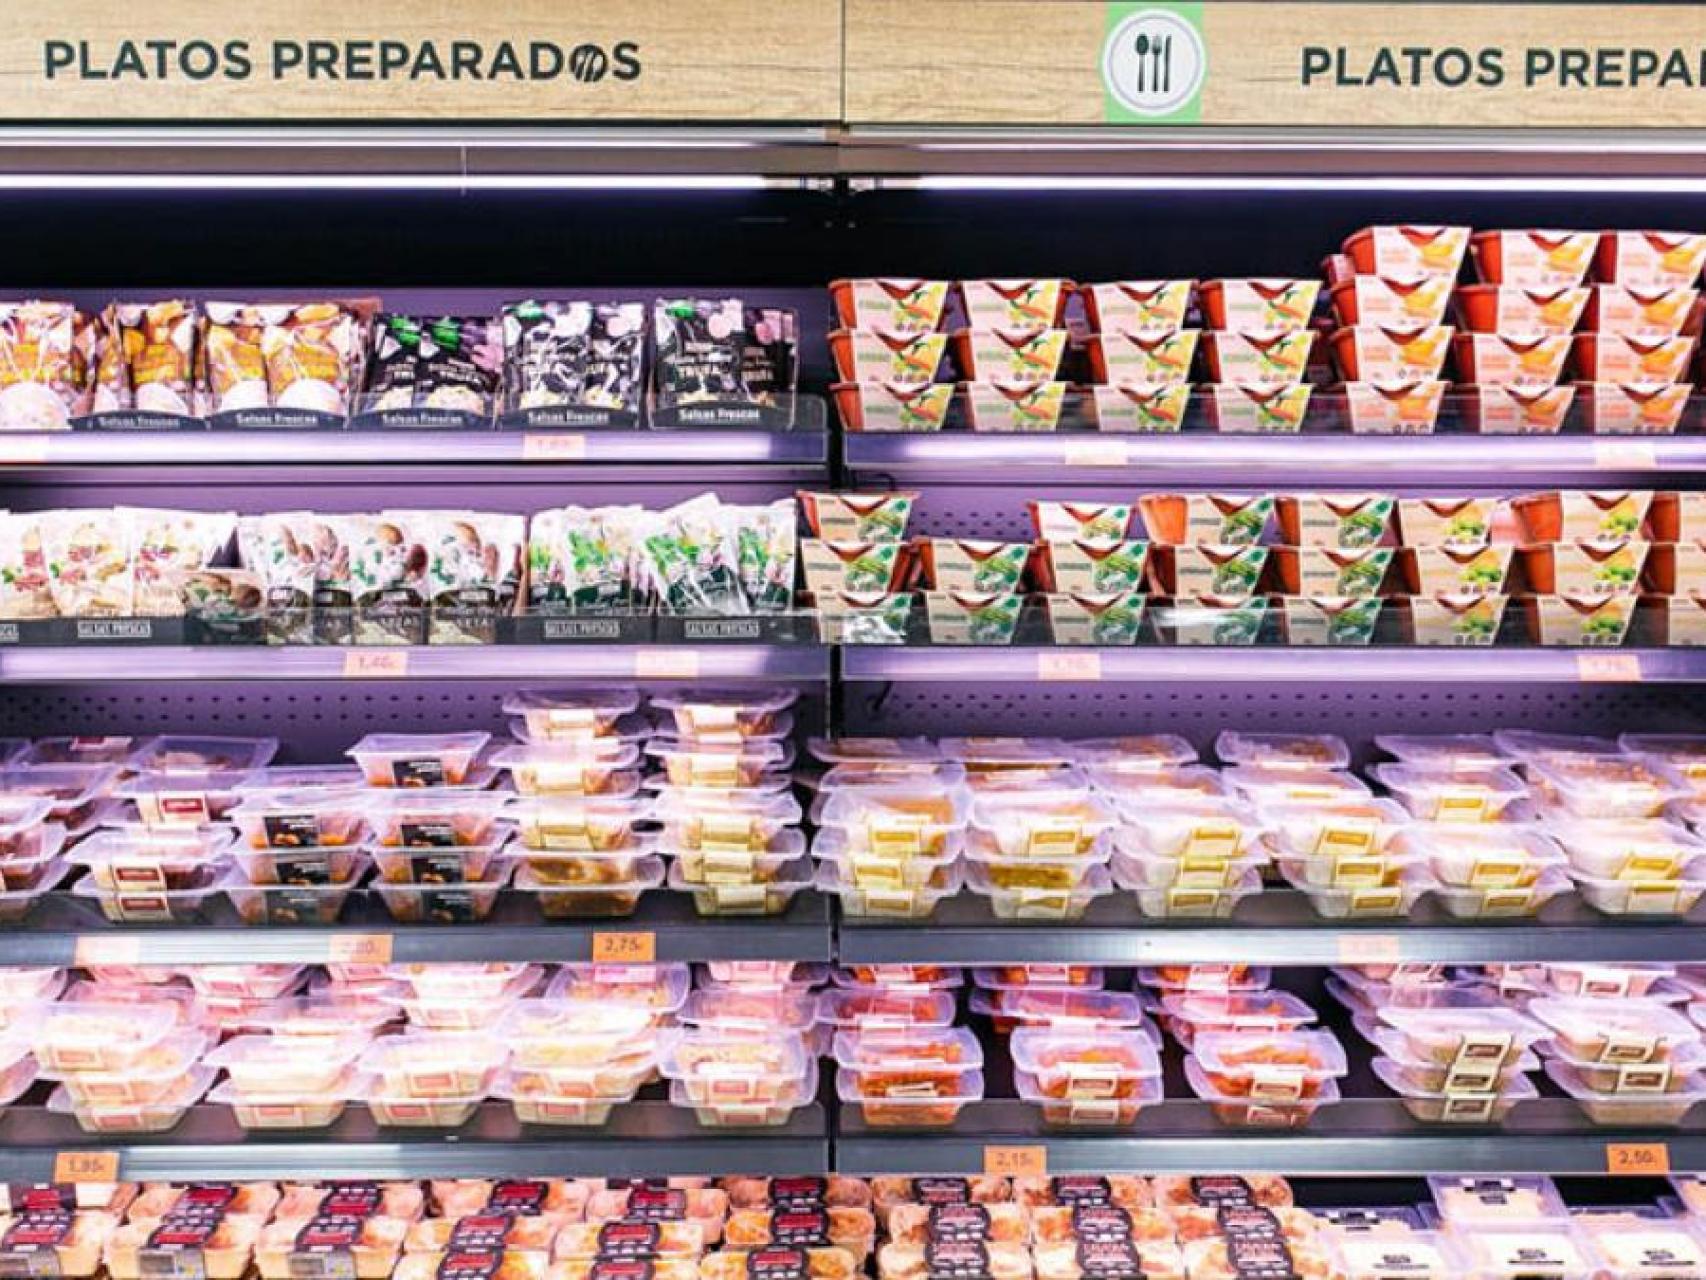 El «listo para comer» gana cada vez más protagonismo en los supermercados